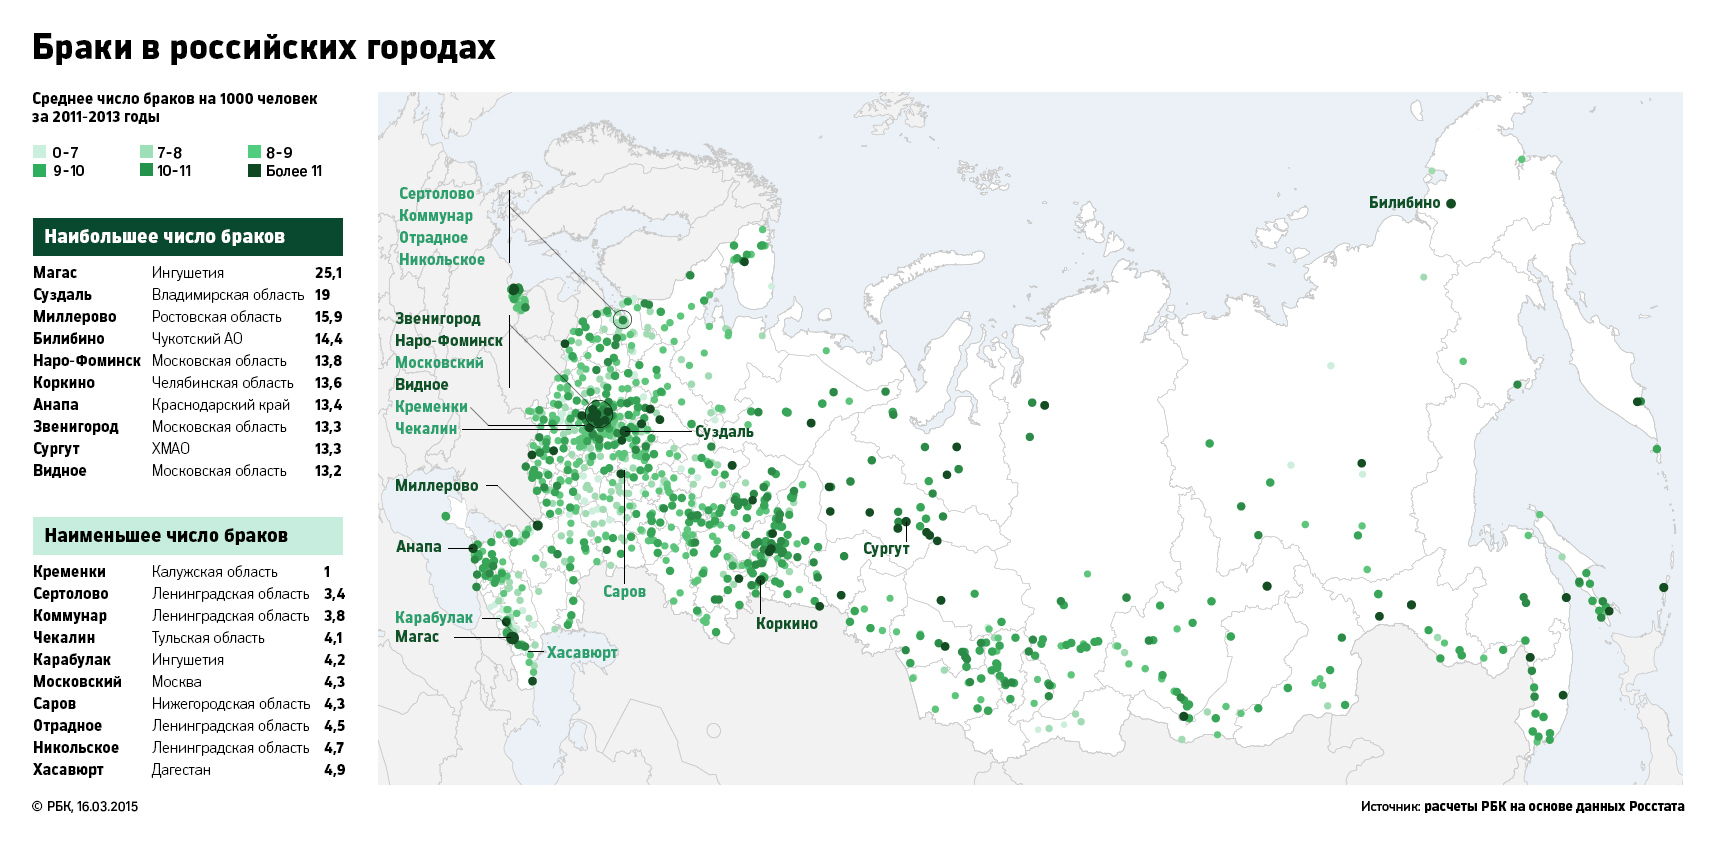 Исследование РБК: почему вымирают российские города